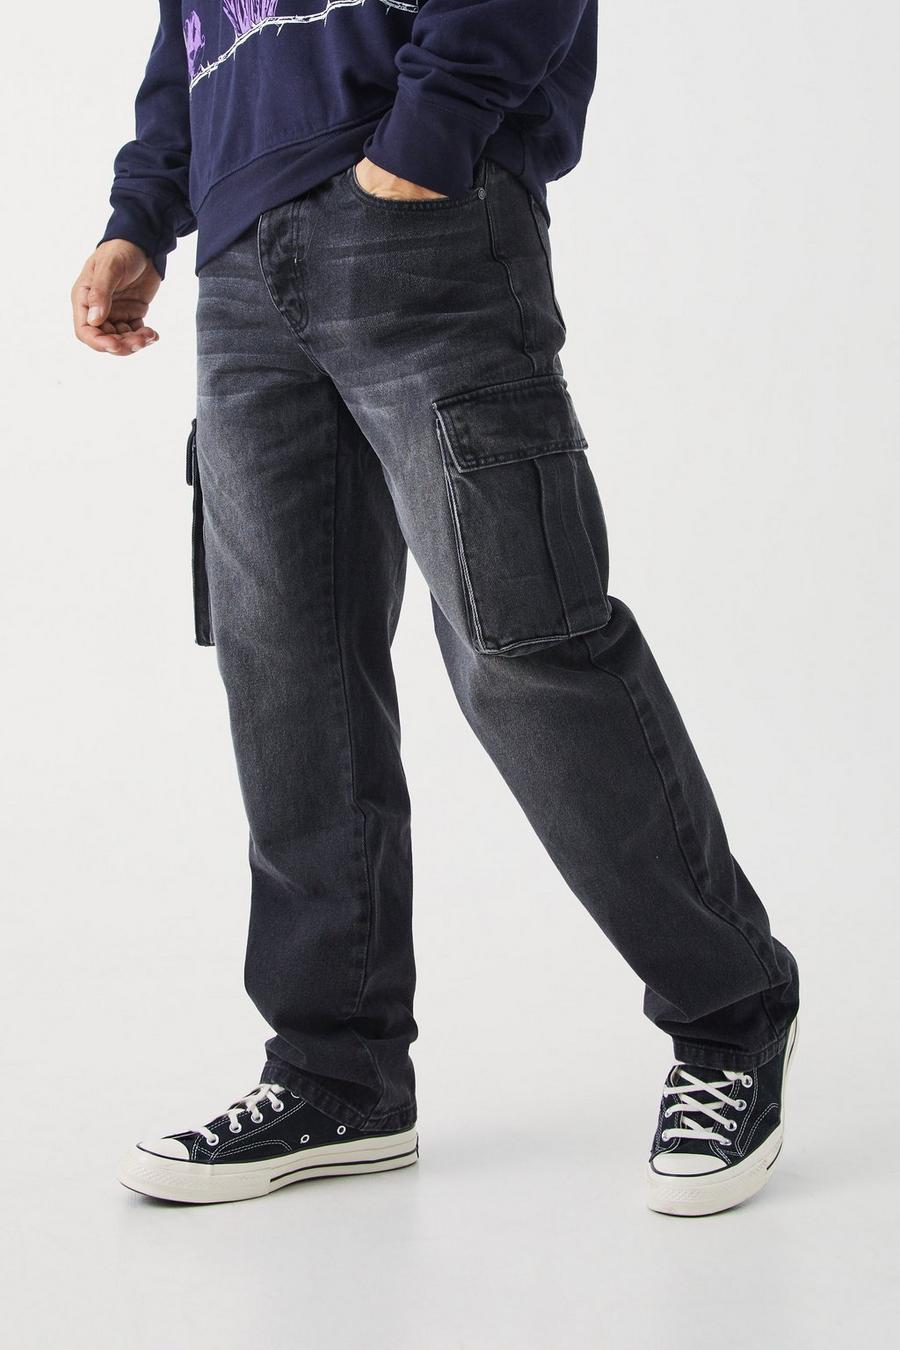 Washed black Bellfield Stonewash-Jeans mit schmal zulaufenden Hosenbeinen